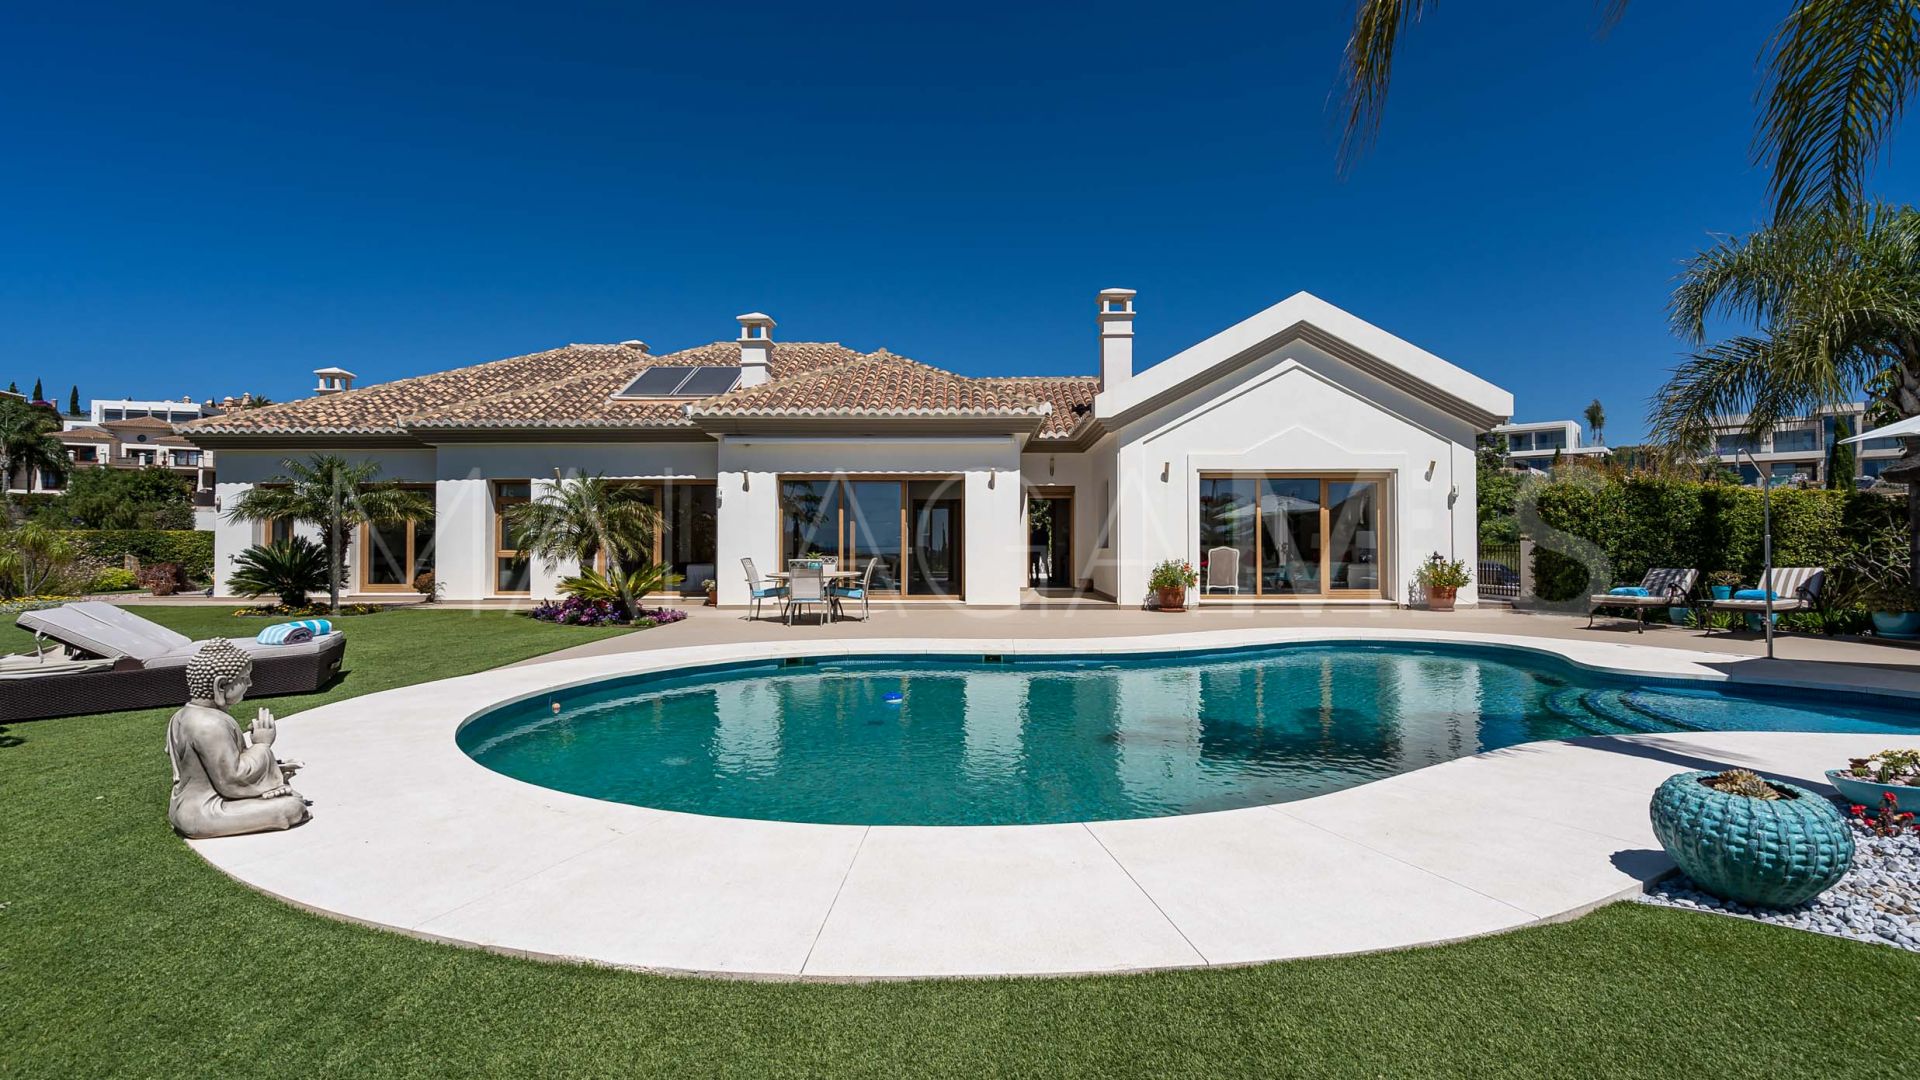 Villa with 4 bedrooms for sale in Los Flamingos